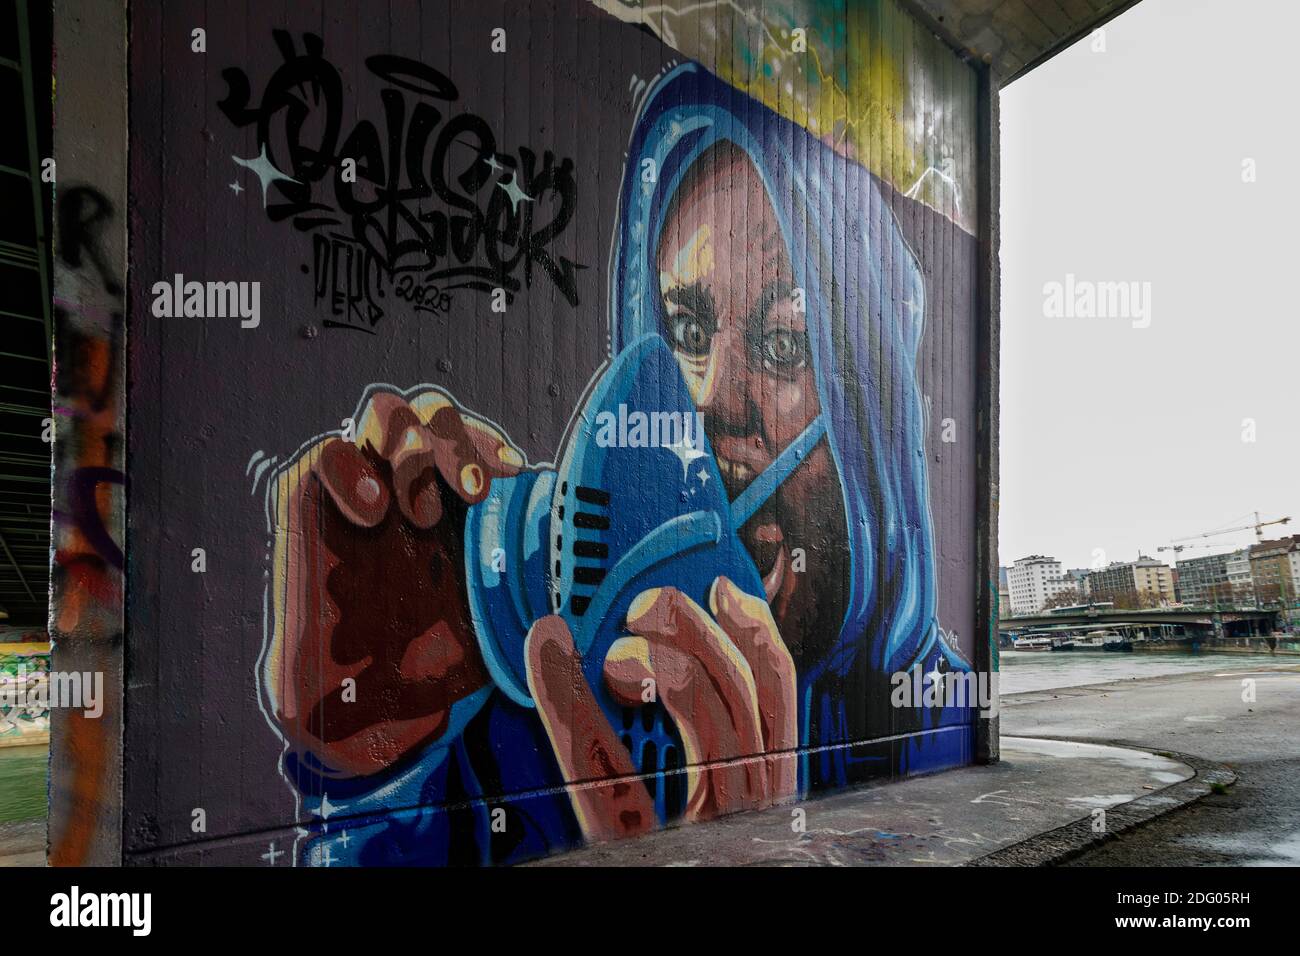 Wien, Wien: Graffiti eines Mannes mit Mundnasenschutzmaske, an der Wand am Donaukanal im Jahr 01. Altstadt, Wien, Österreich Stockfoto